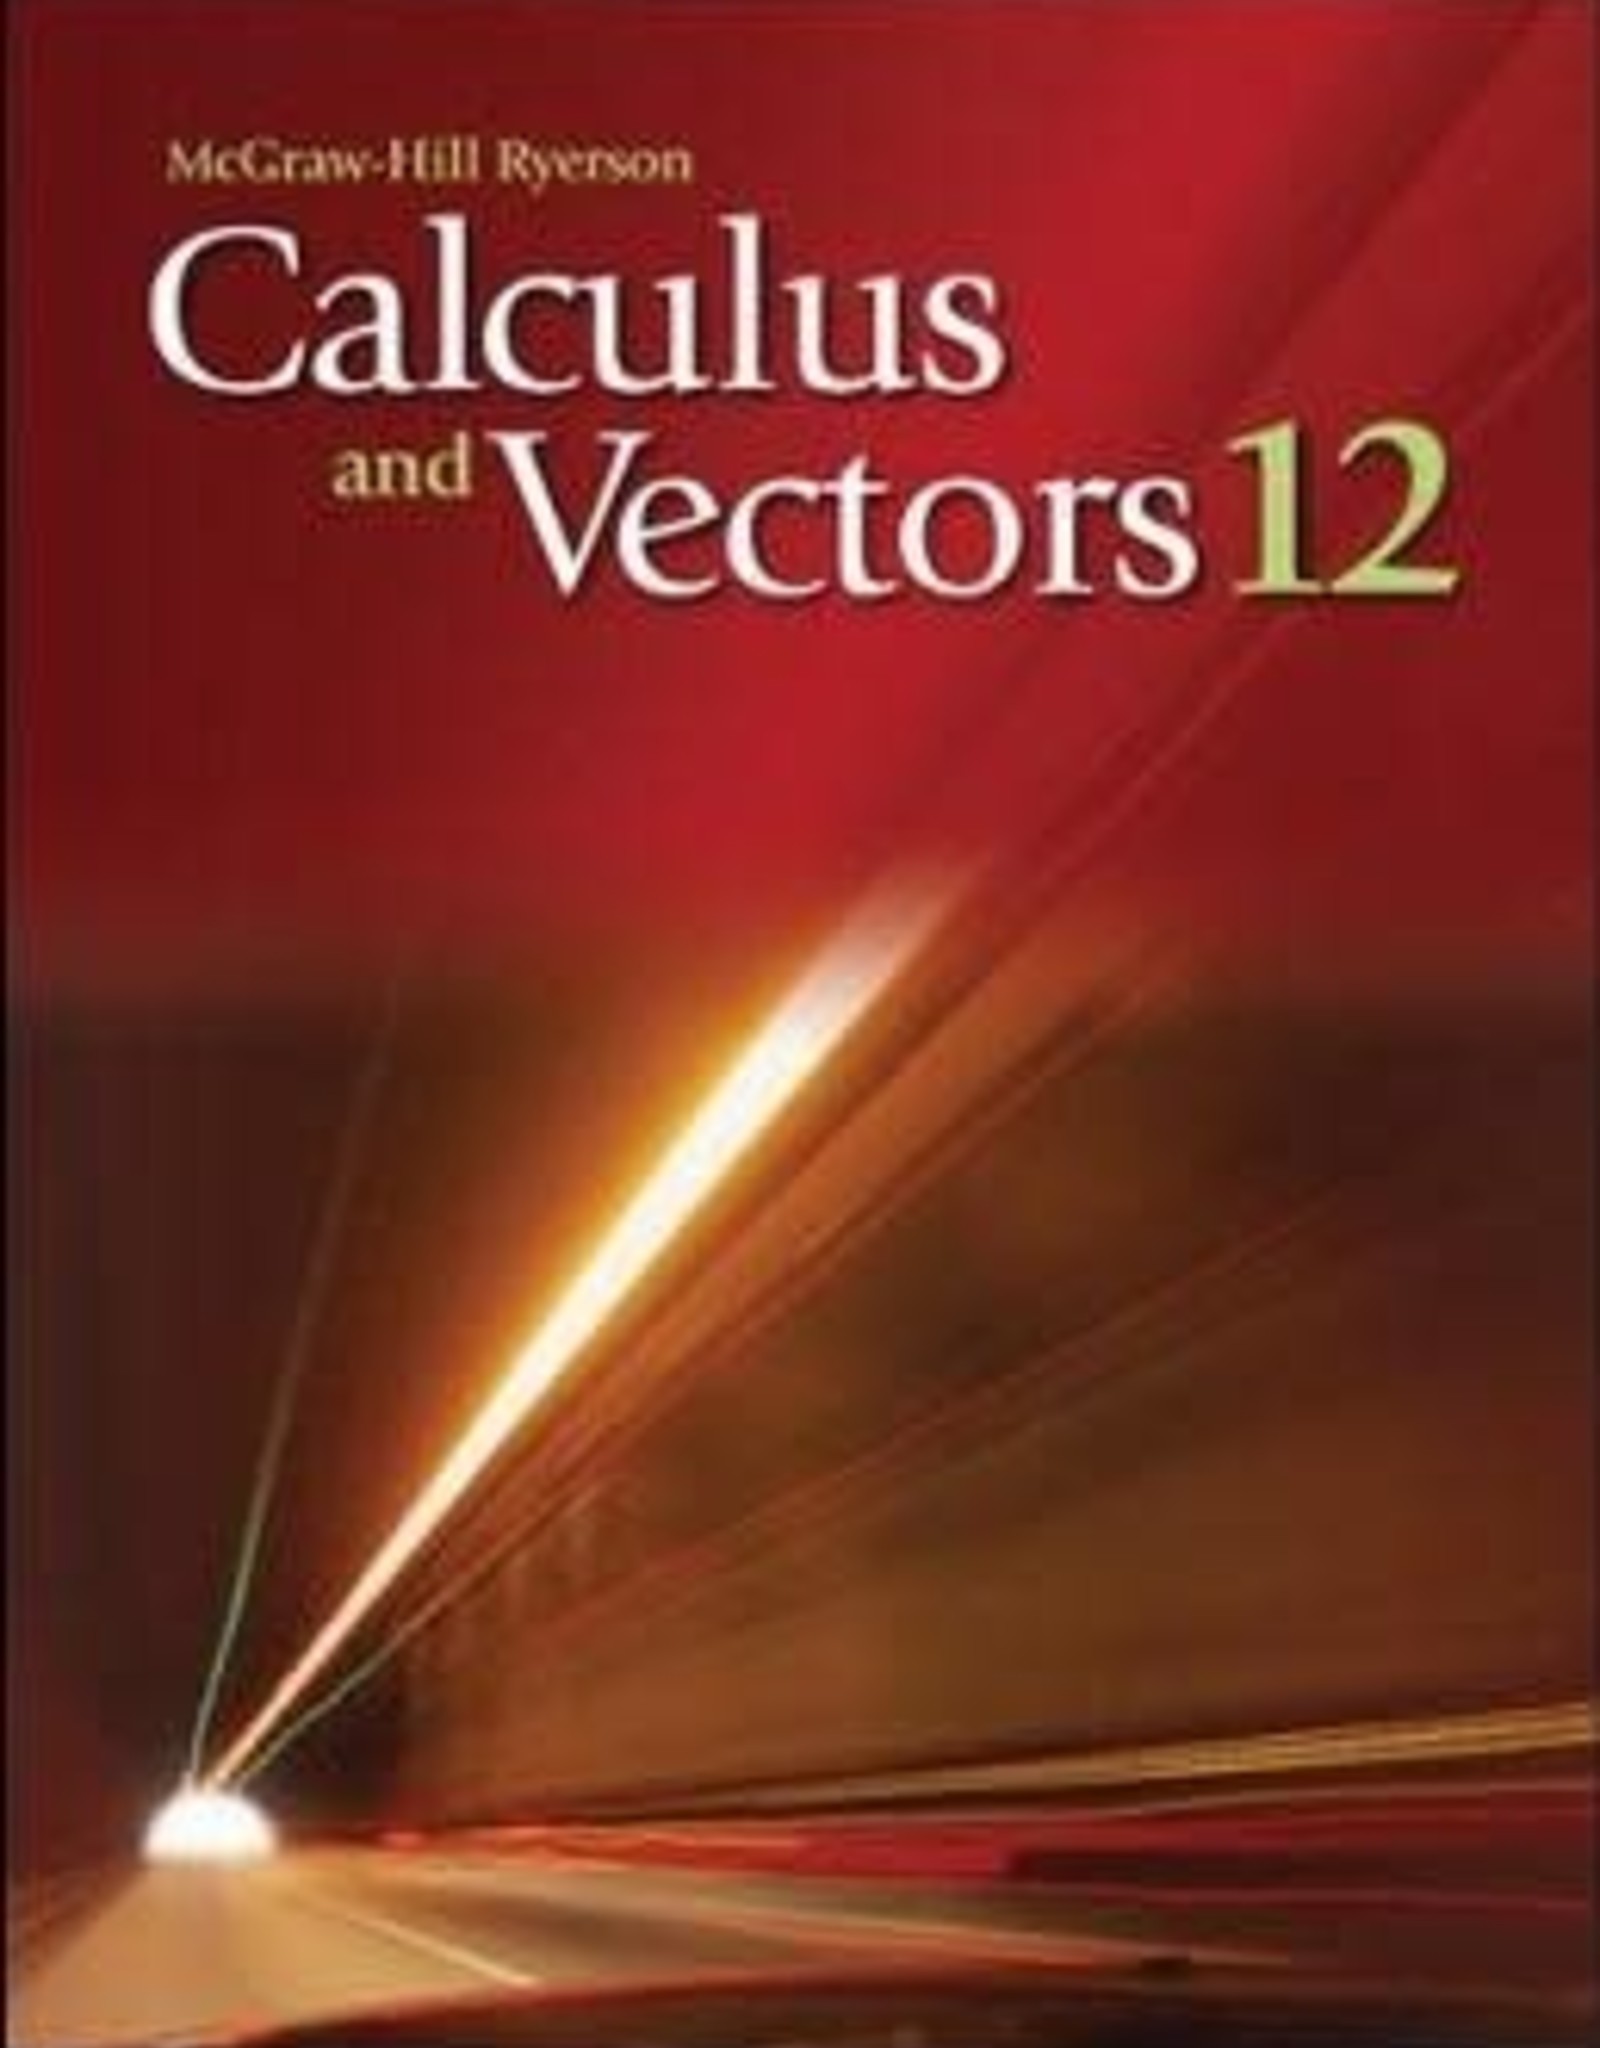 calculus textbook